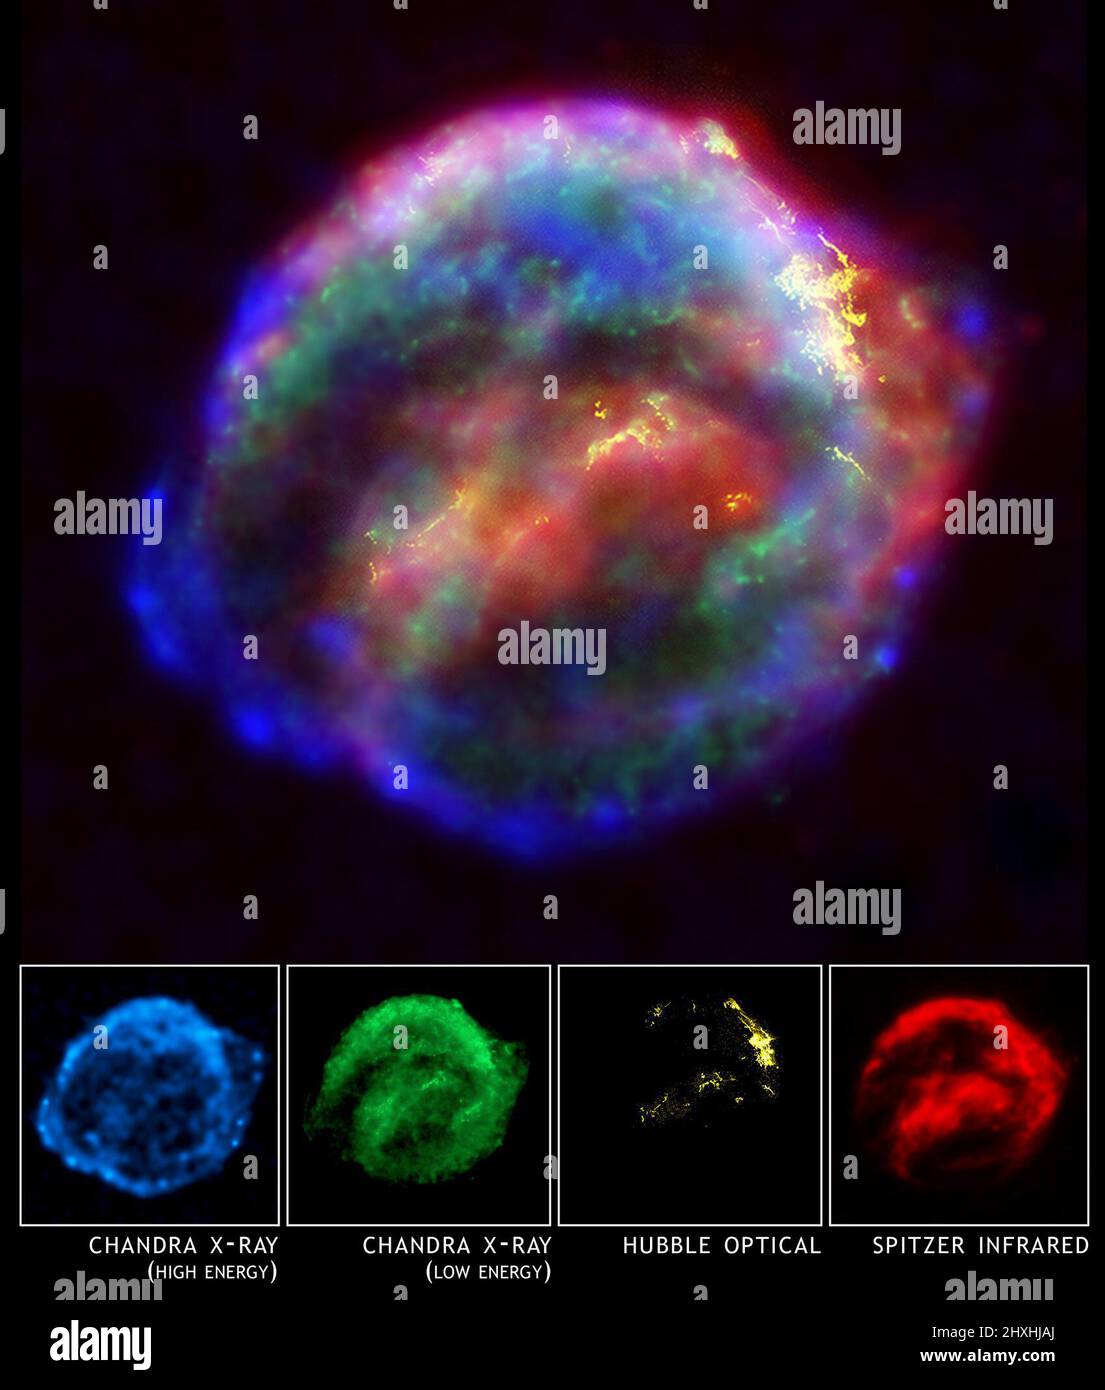 Questa immagine composita a raggi X di Chandra (blu e verde), telescopio spaziale Hubble ottico (giallo) e telescopio spaziale Spitzer a infrarossi (rosso) mostra una nube di gas e polvere che è di 14 anni luce in diametro ed espansione a 4 milioni di miglia all'ora (2.000 chilometri al secondo). L'immagine ottica rivela un gas di 10.000 gradi Celsius in cui l'onda d'urto supernova sbatte nelle regioni più dense del gas circostante. L'immagine a infrarossi evidenzia le particelle microscopiche di polvere spazzate e riscaldate dall'onda d'urto supernova. I dati radiologici mostrano regioni con gas di grado multimilionario o con un'en estremamente alta Foto Stock